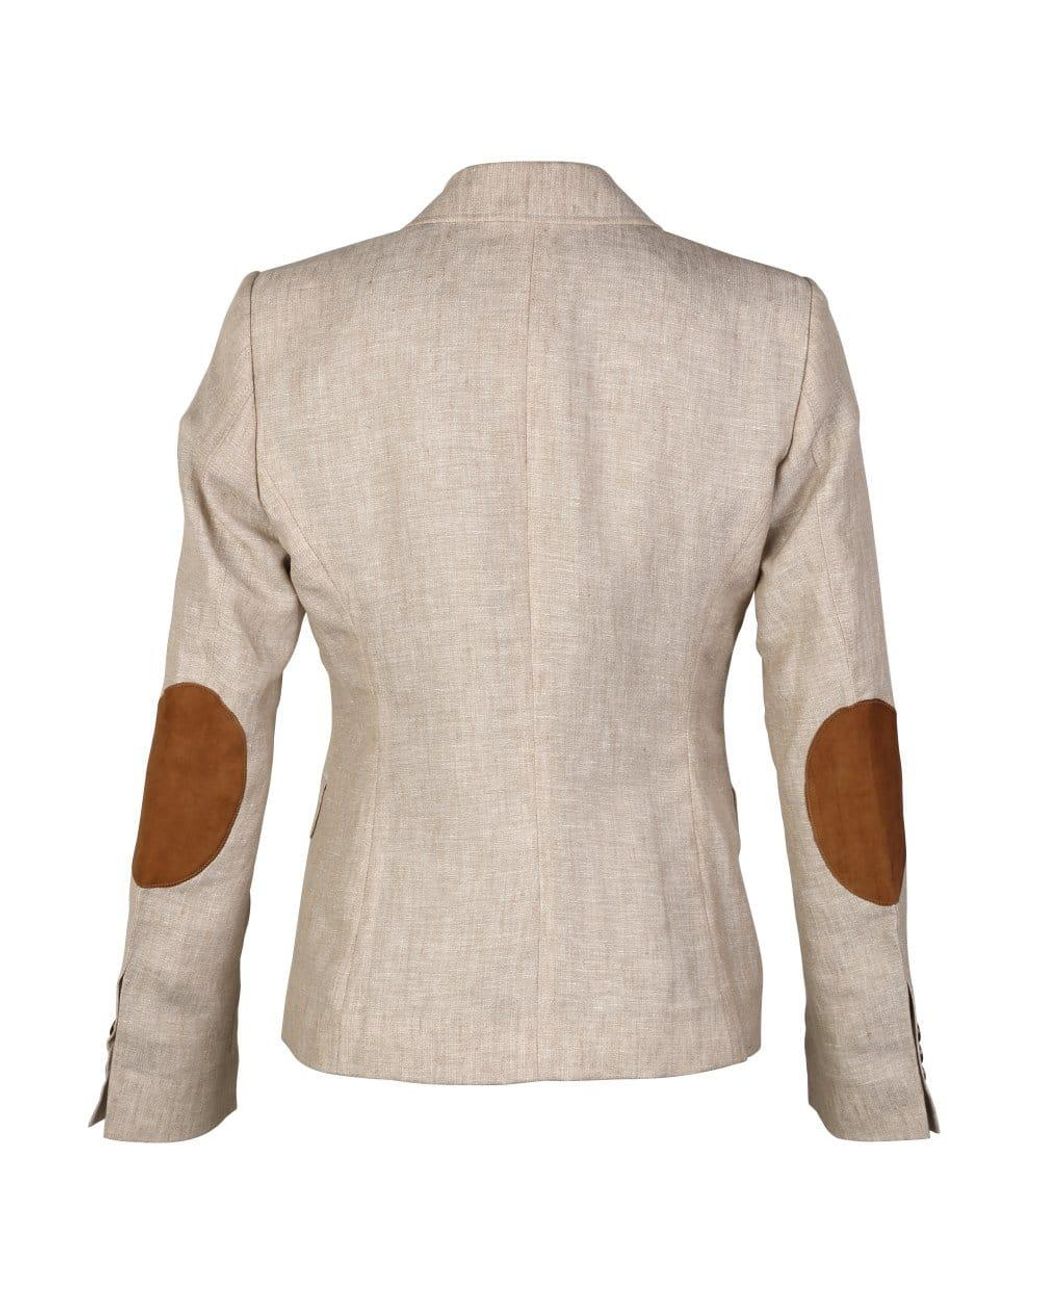 Womens Blazer Suit Wool Tweed Elbow Patch 1920s Vintage